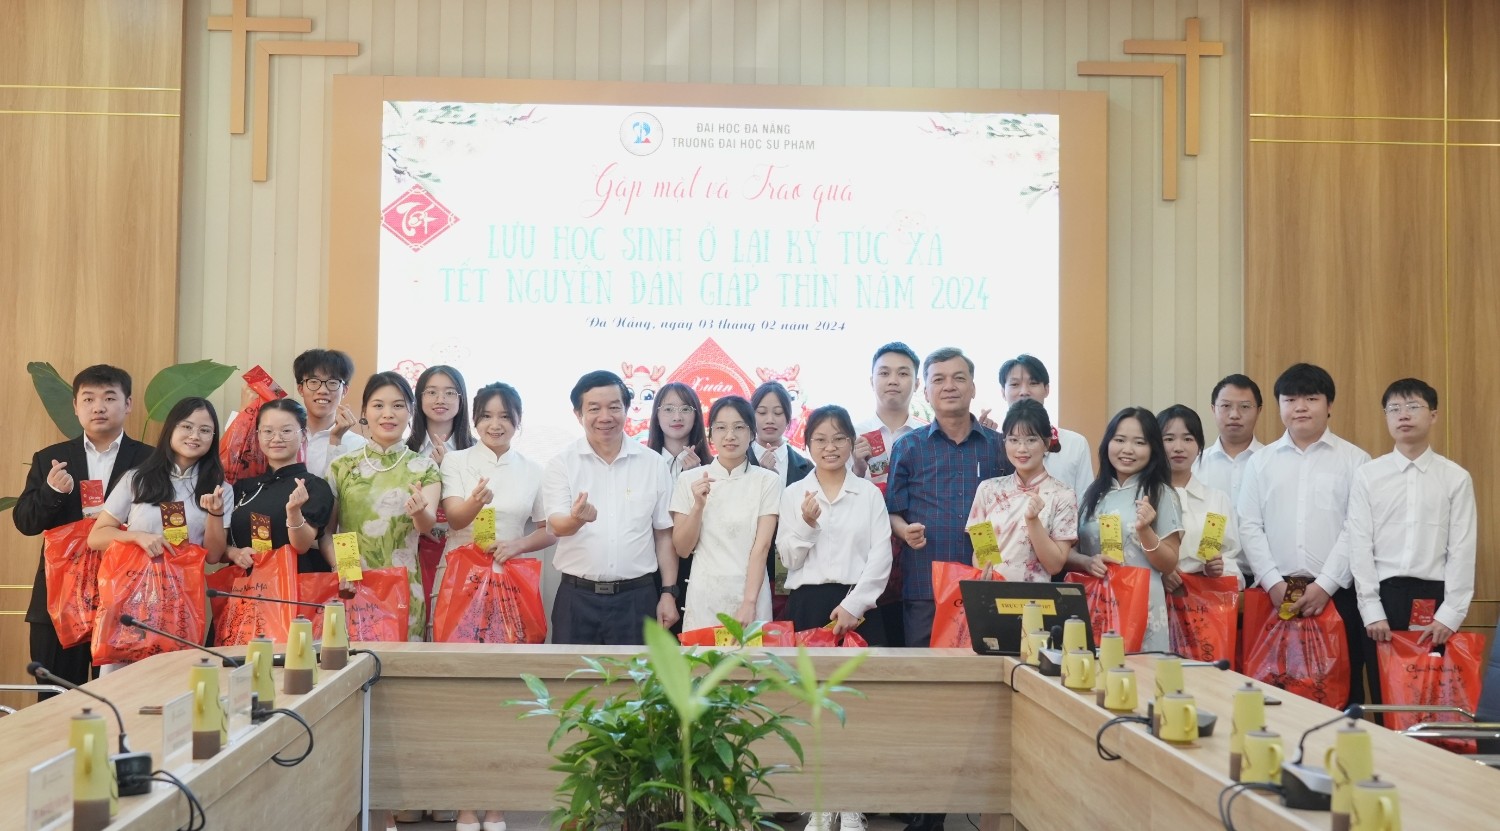 Trường Đại học Sư phạm – Đại học Đà Nẵng tặng quà Tết lưu học sinh quốc tế